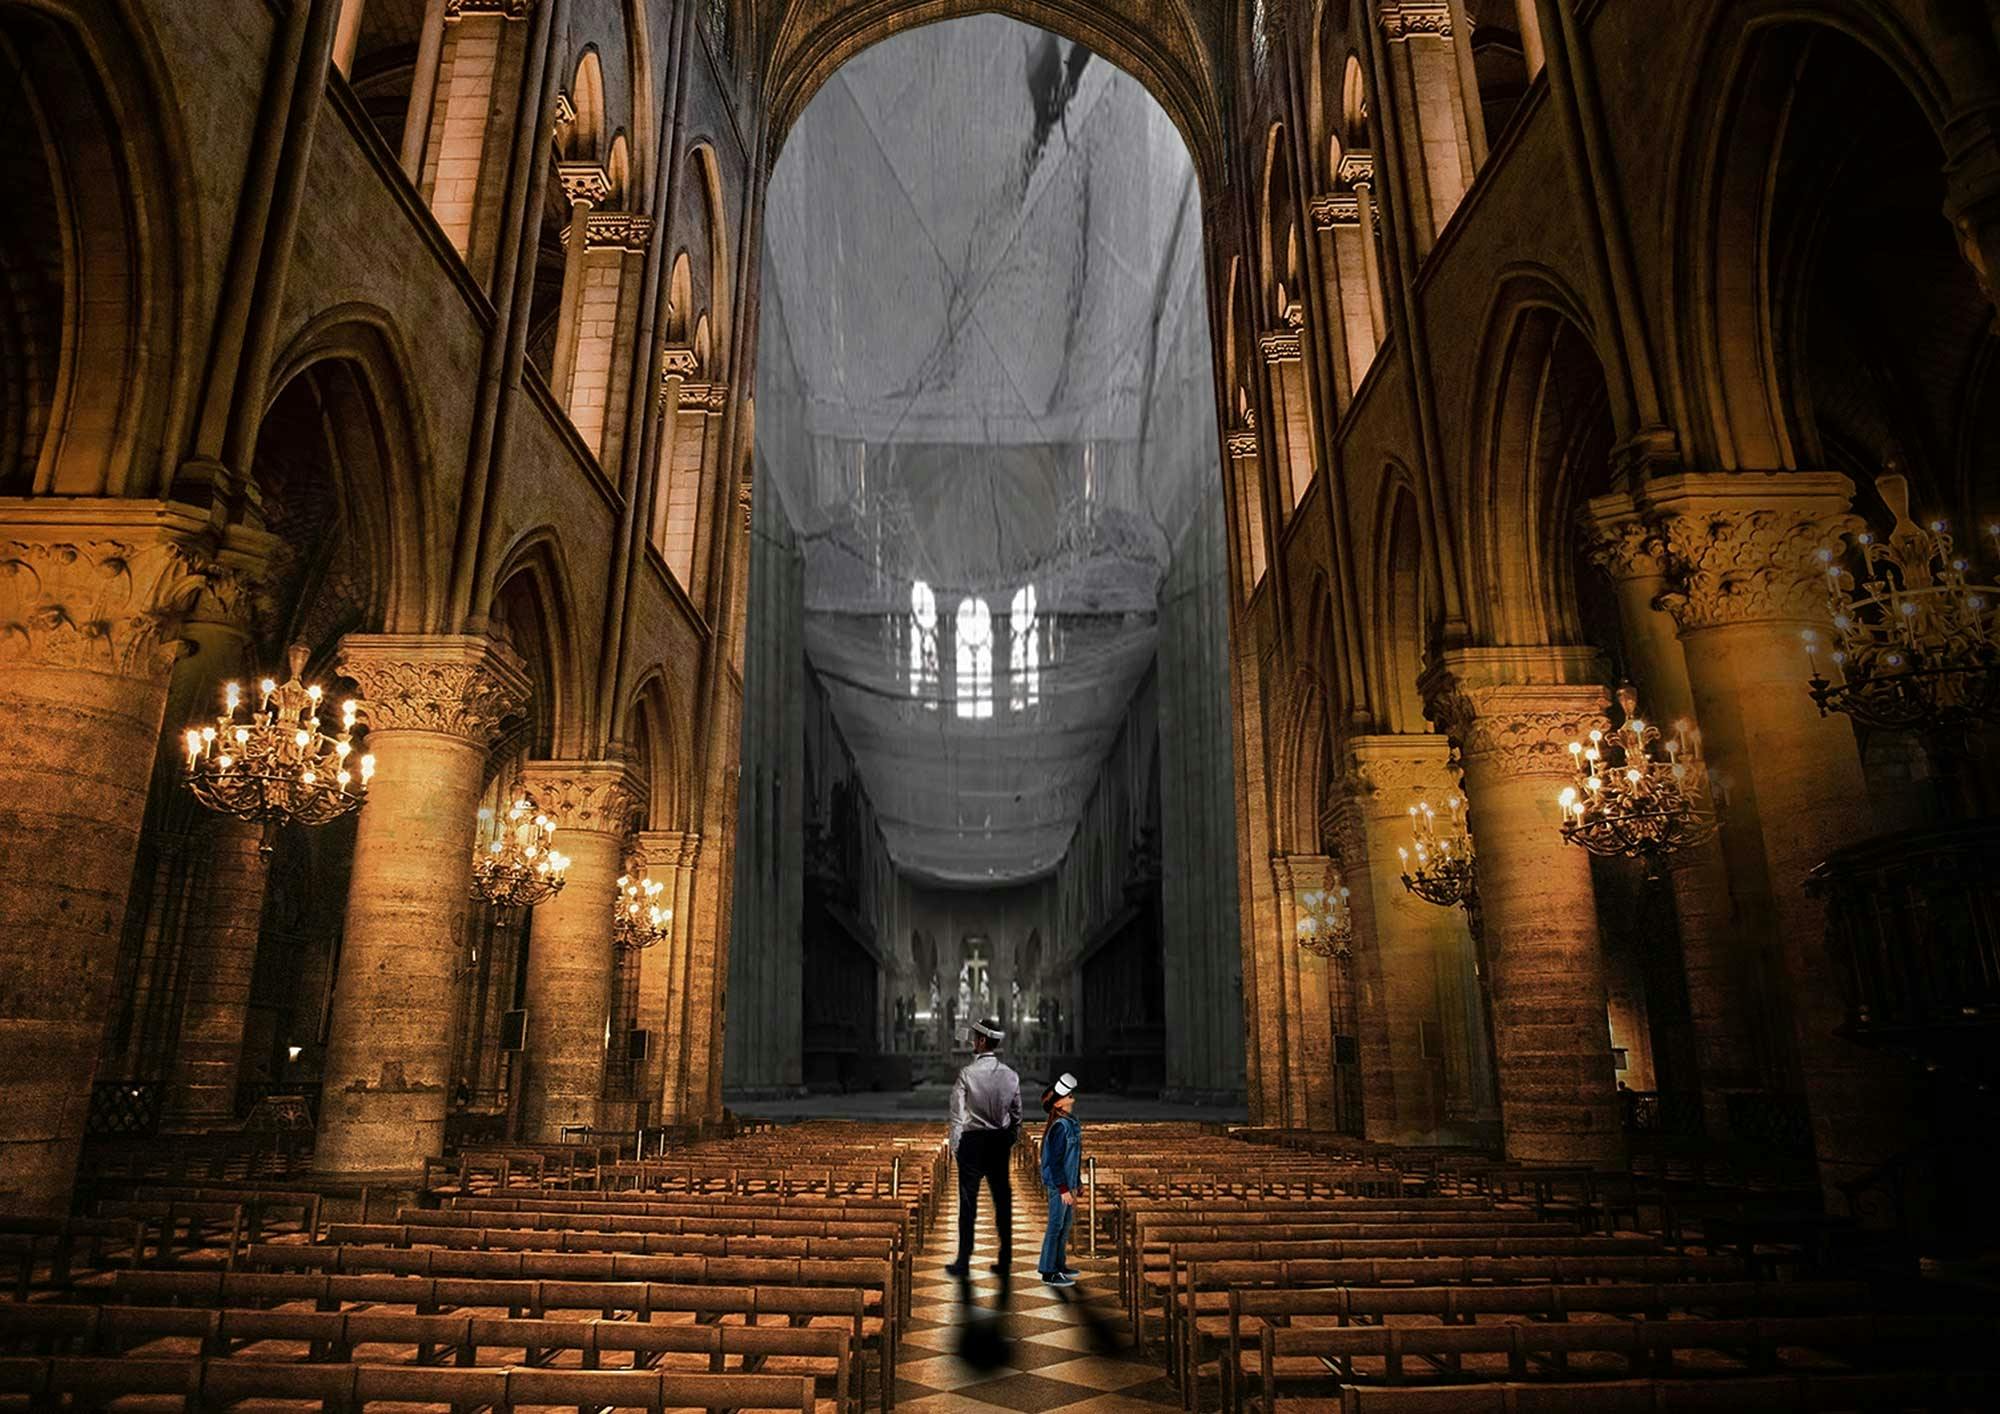 Esperienza di realtà virtuale Flyview all'interno di Notre-Dame prima e dopo l'incendio